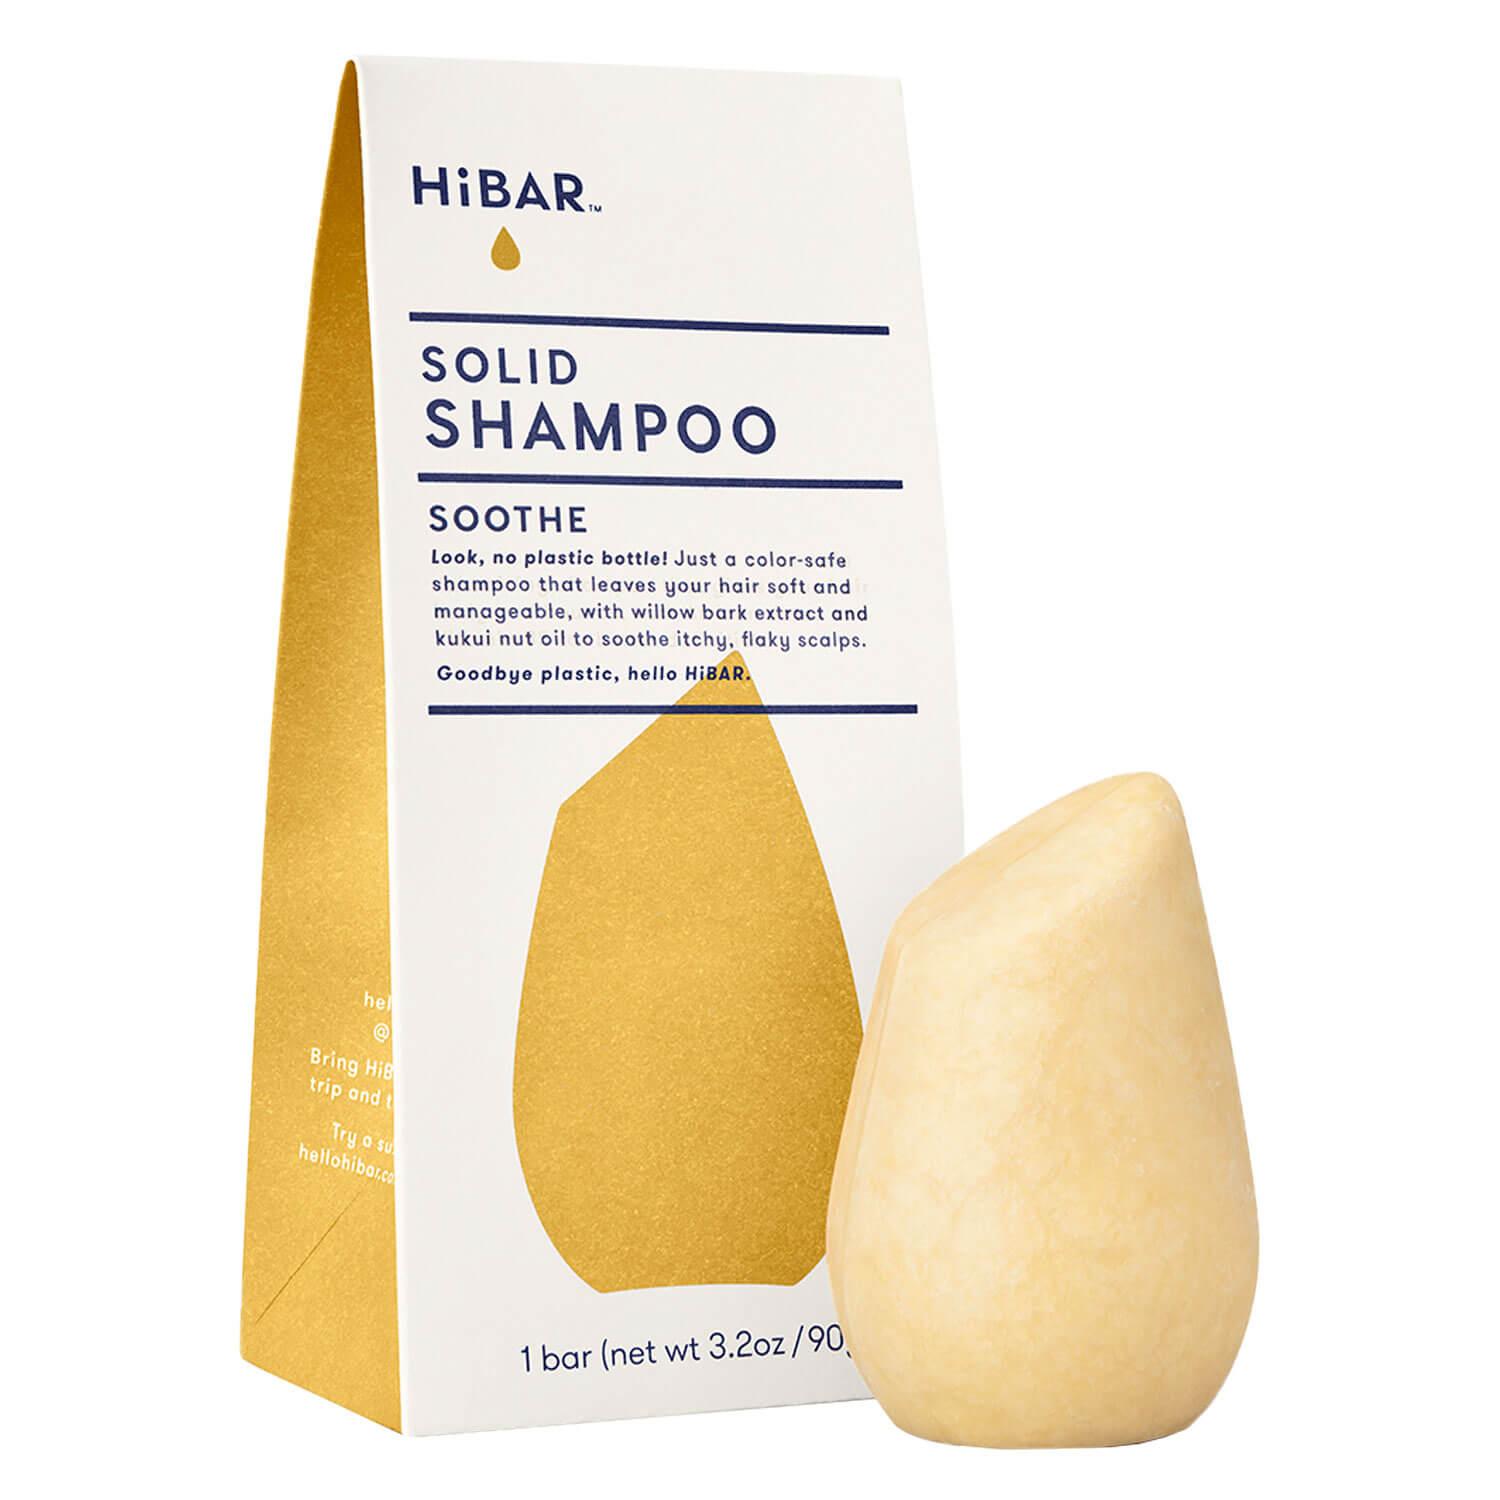 HiBAR - SOOTHE Solid Shampoo